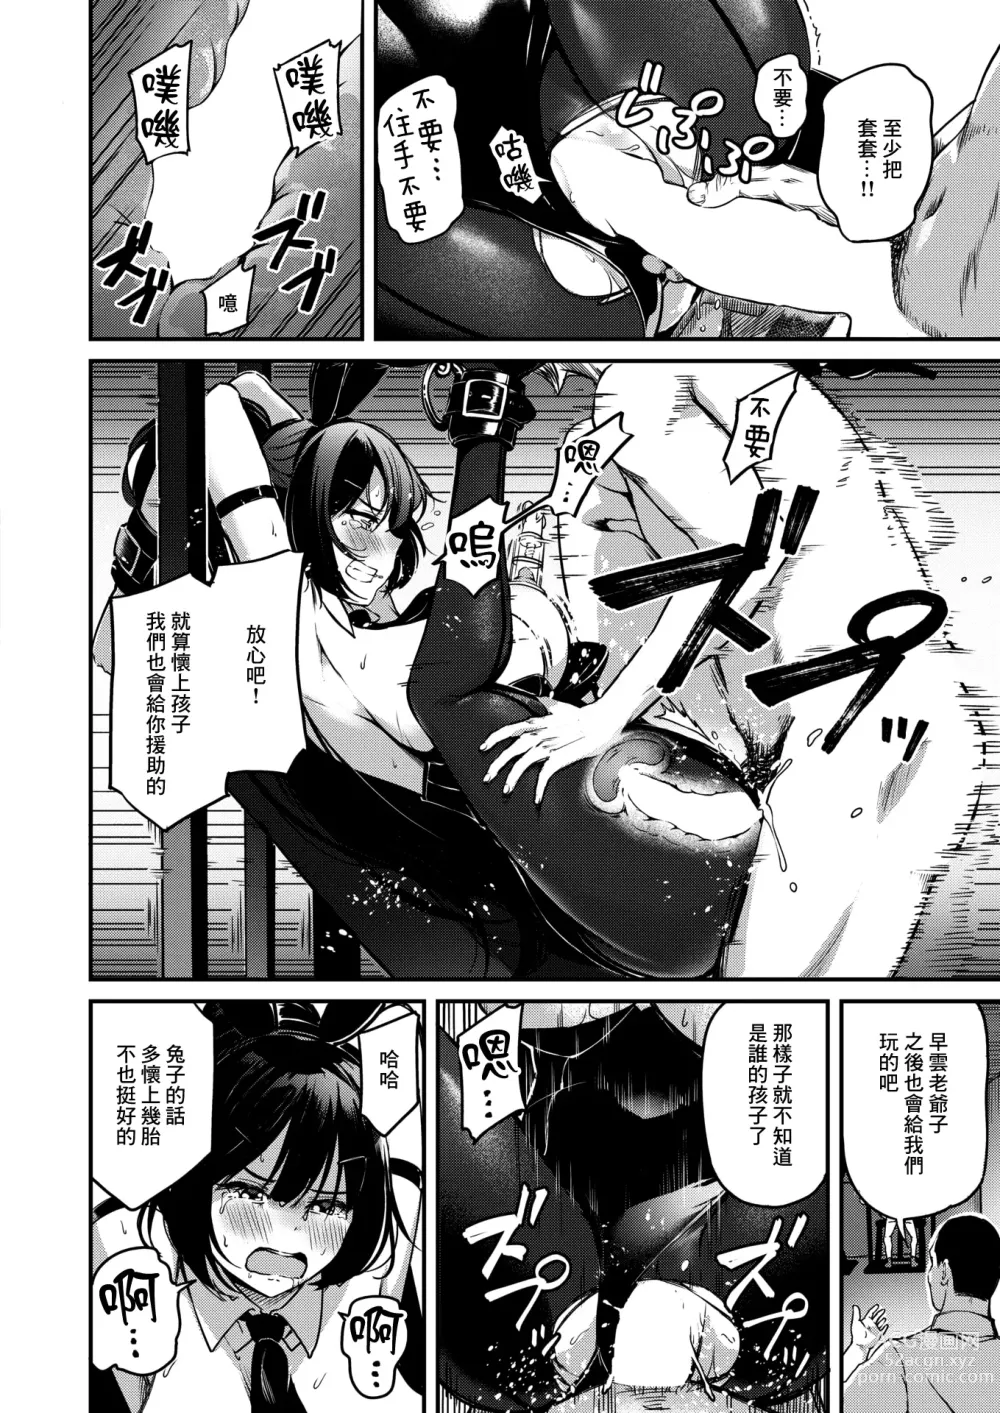 Page 11 of manga Naraba Kono Mi o Sasageyou